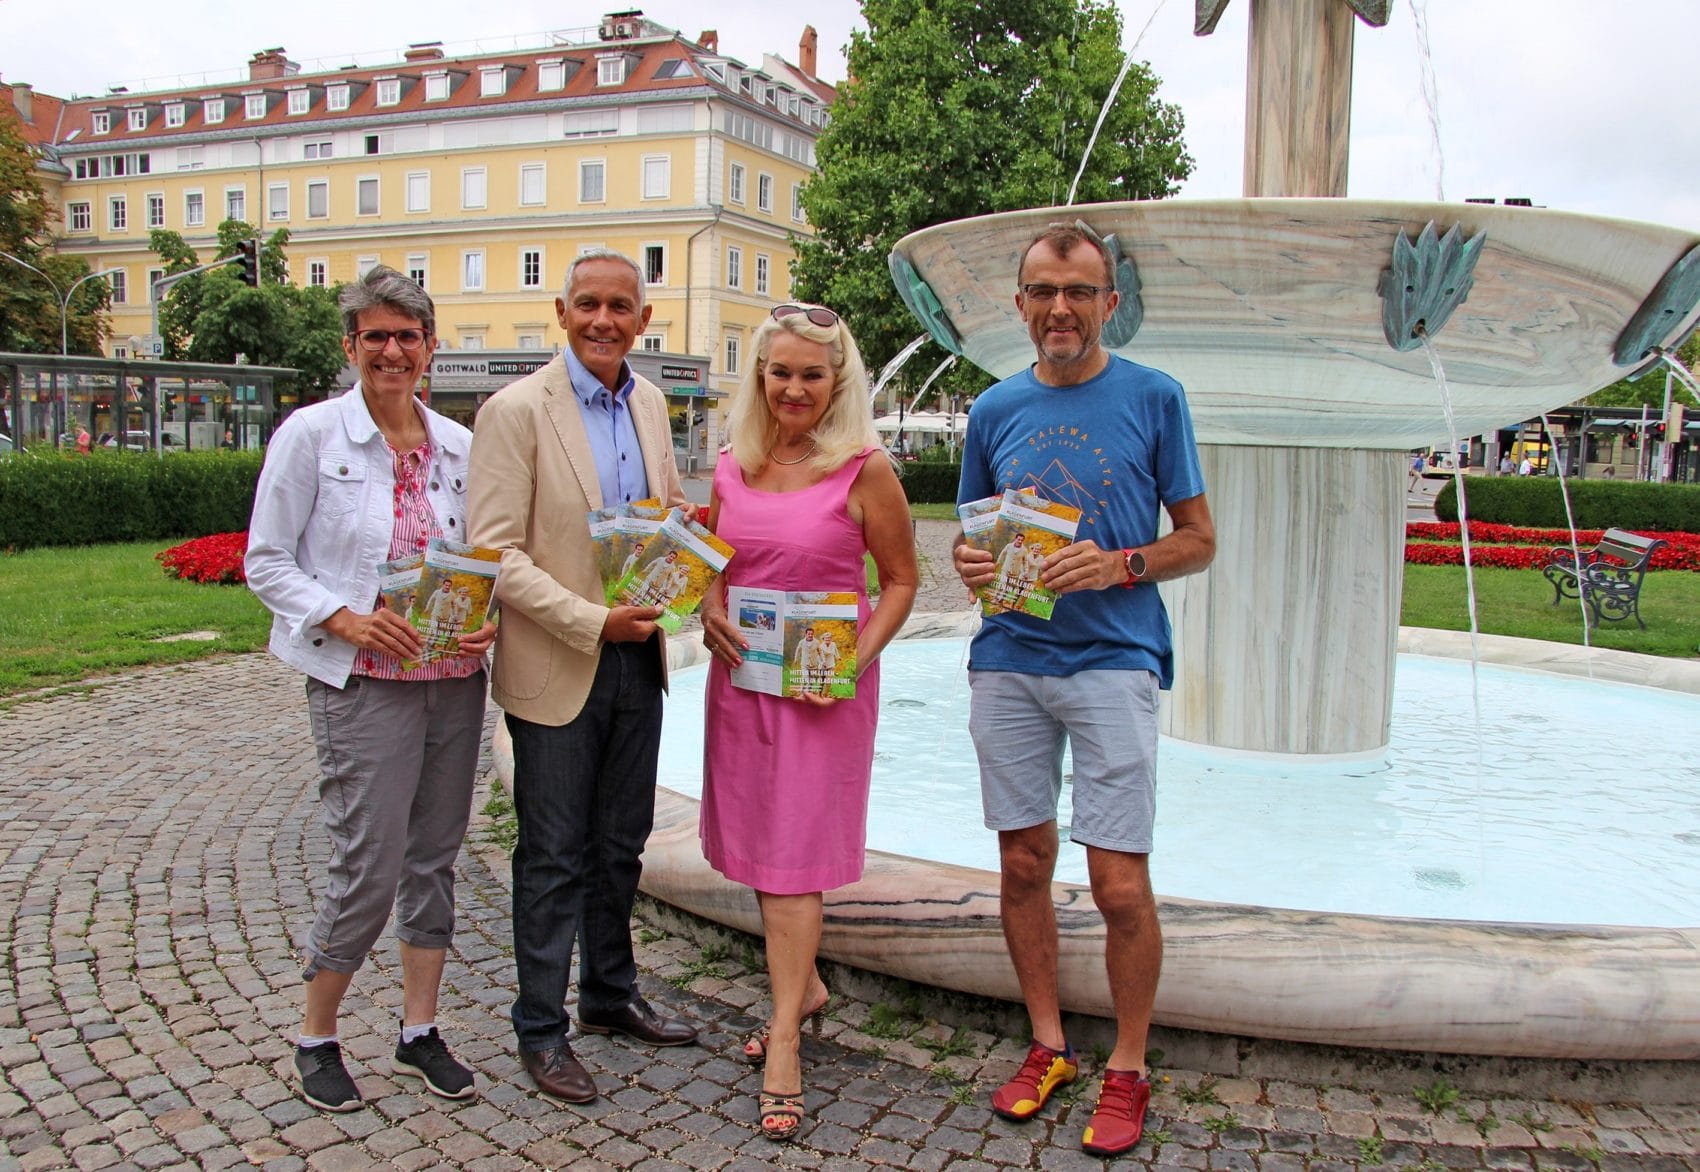 Präsentieren das Herbst-Programm für die 50+ Generation:
Vizebürgermeister Jürgen Pfeiler mit Mag. Karin Ertl, Ingrid Trapp
(Gedächtnistrainerin) und Peter Kampusch (Outdoor Trainer). 